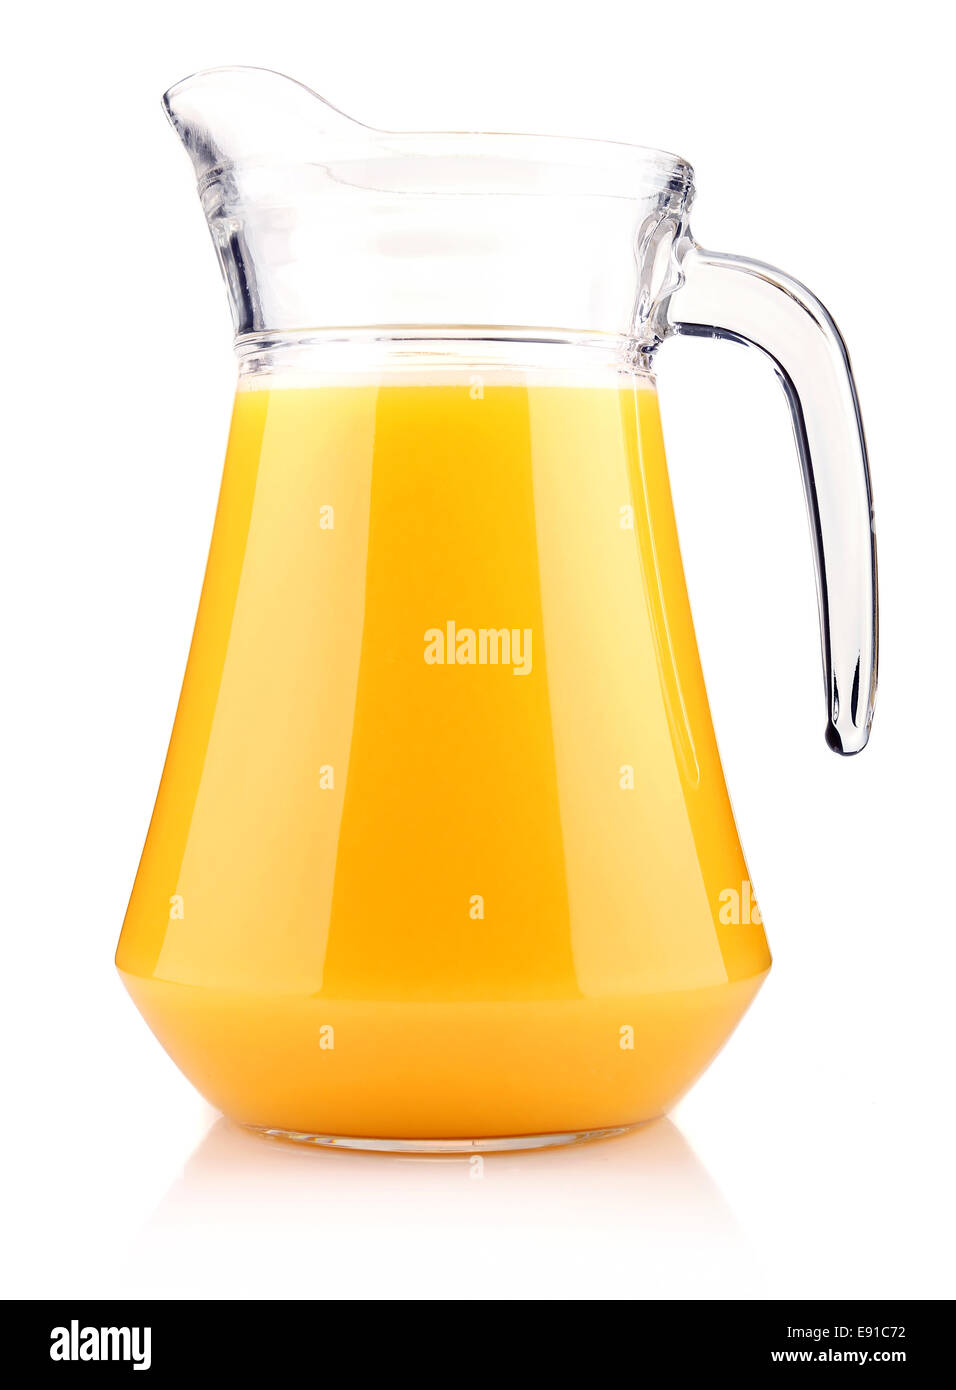 Jug of orange juice isolated on white Stock Photo - Alamy